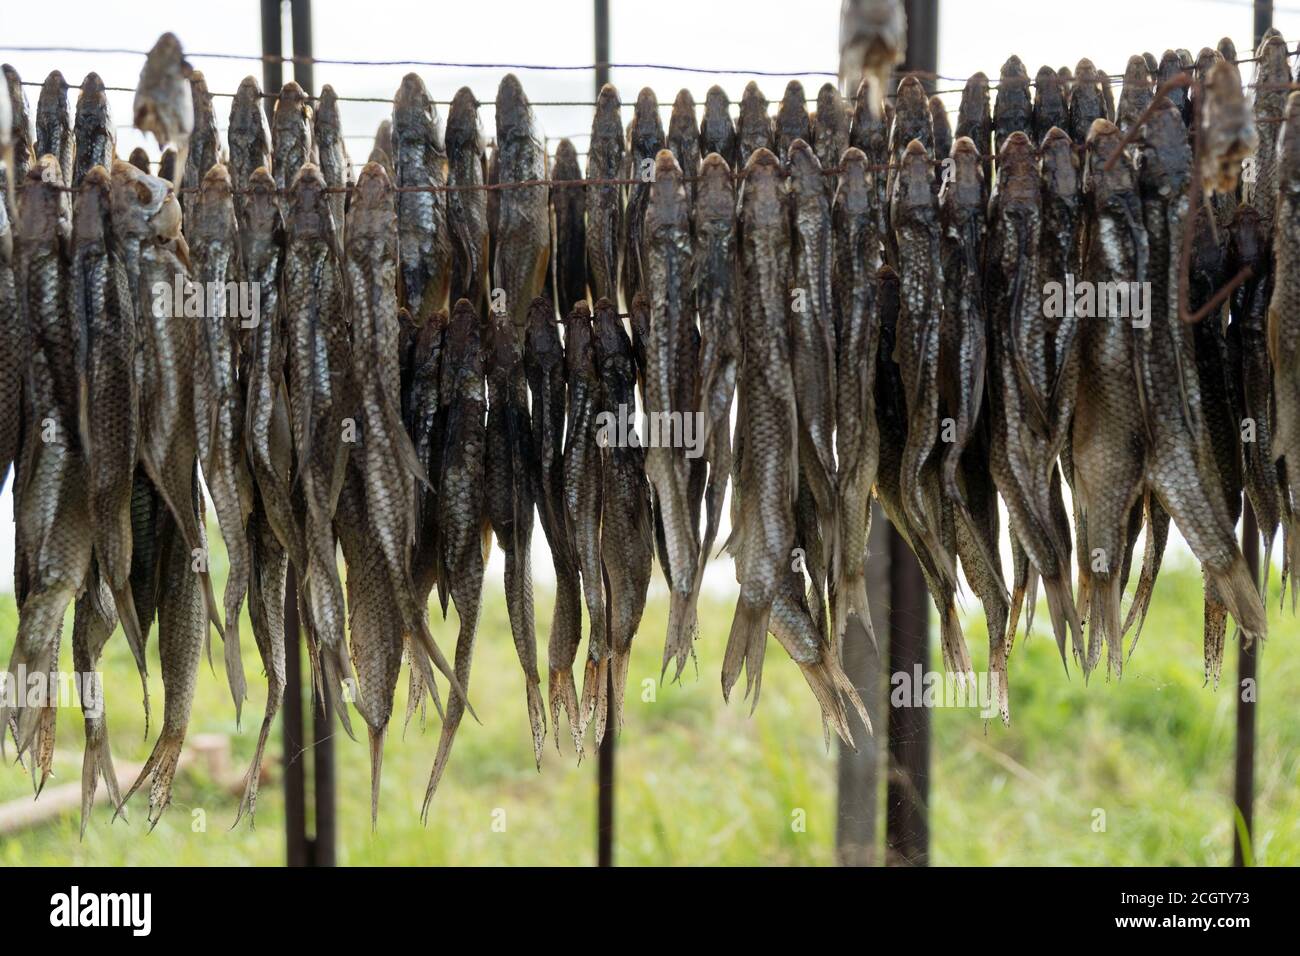 Molti pesci salati sono asciugati su corde all'aperto in grandi quantità. Foto Stock